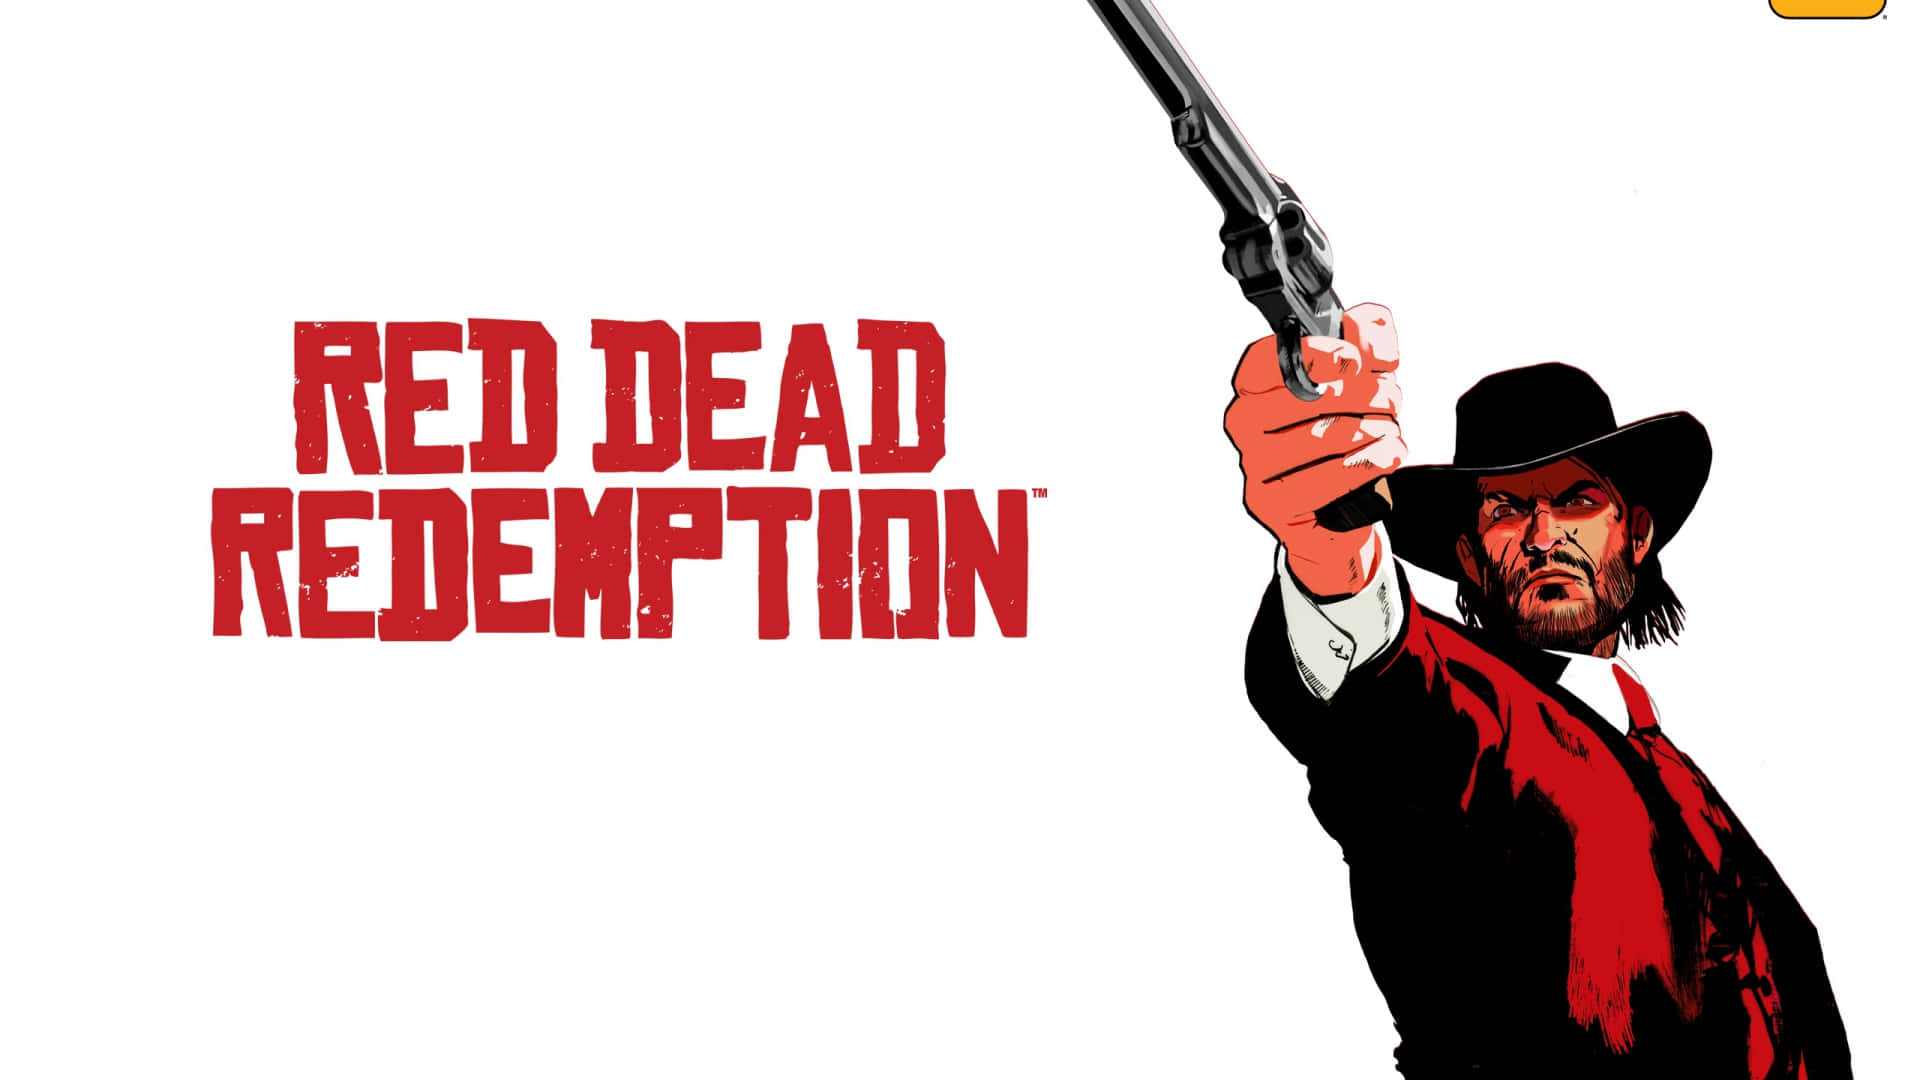 Animerataffischdesign 1920x1080 Red Dead Redemption 2 Bakgrundsbild.